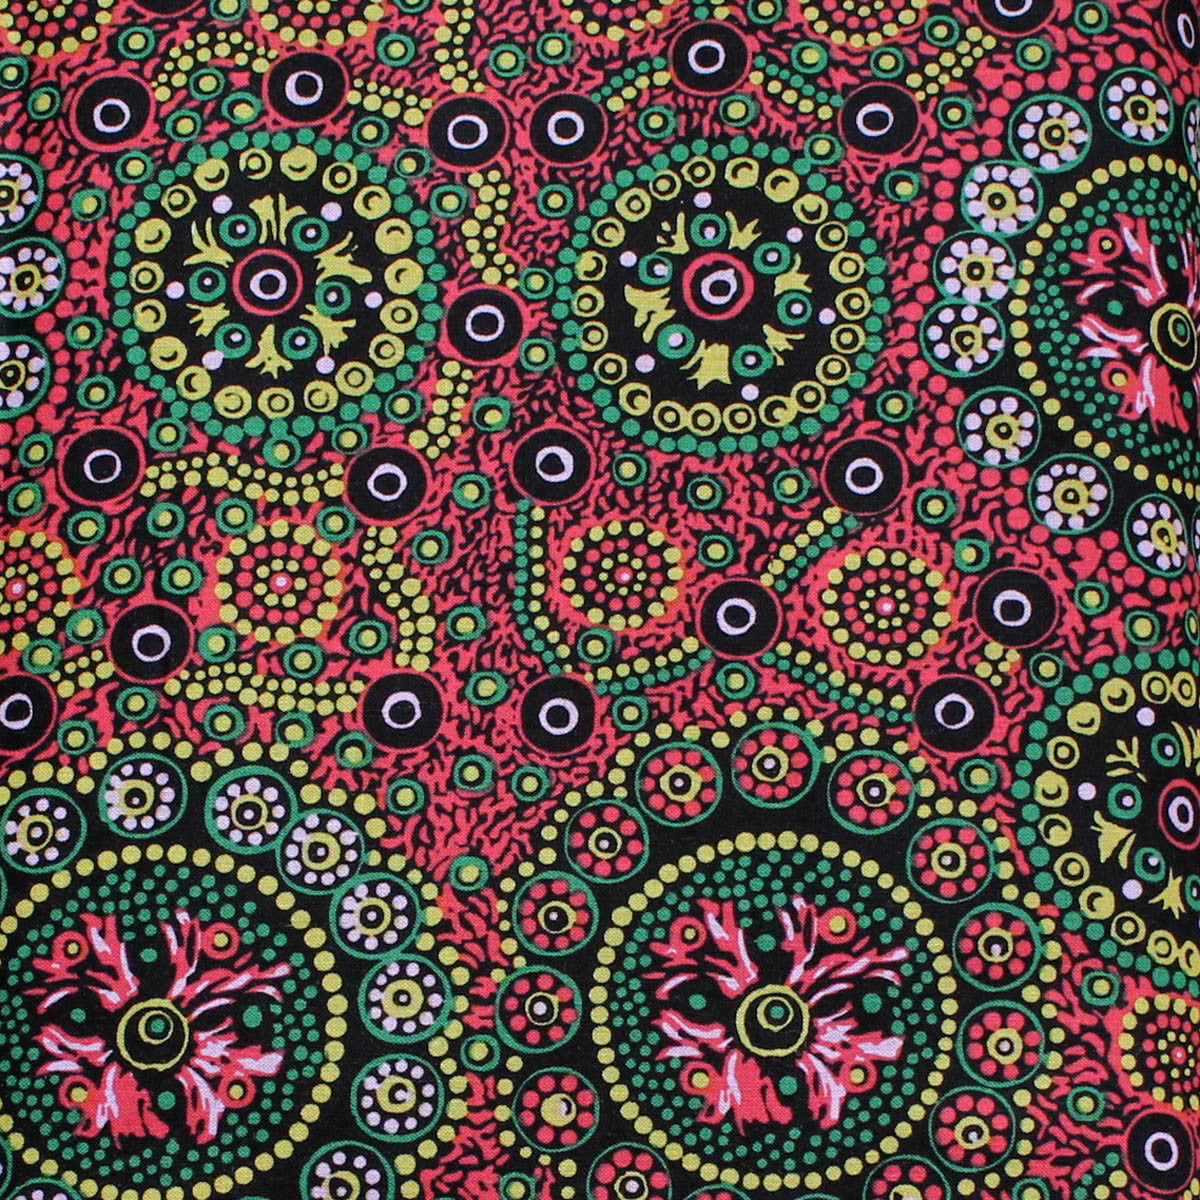 WILD DESERT FLOWERS RED by Australian Aboriginal Artist Vanessa Inkamala